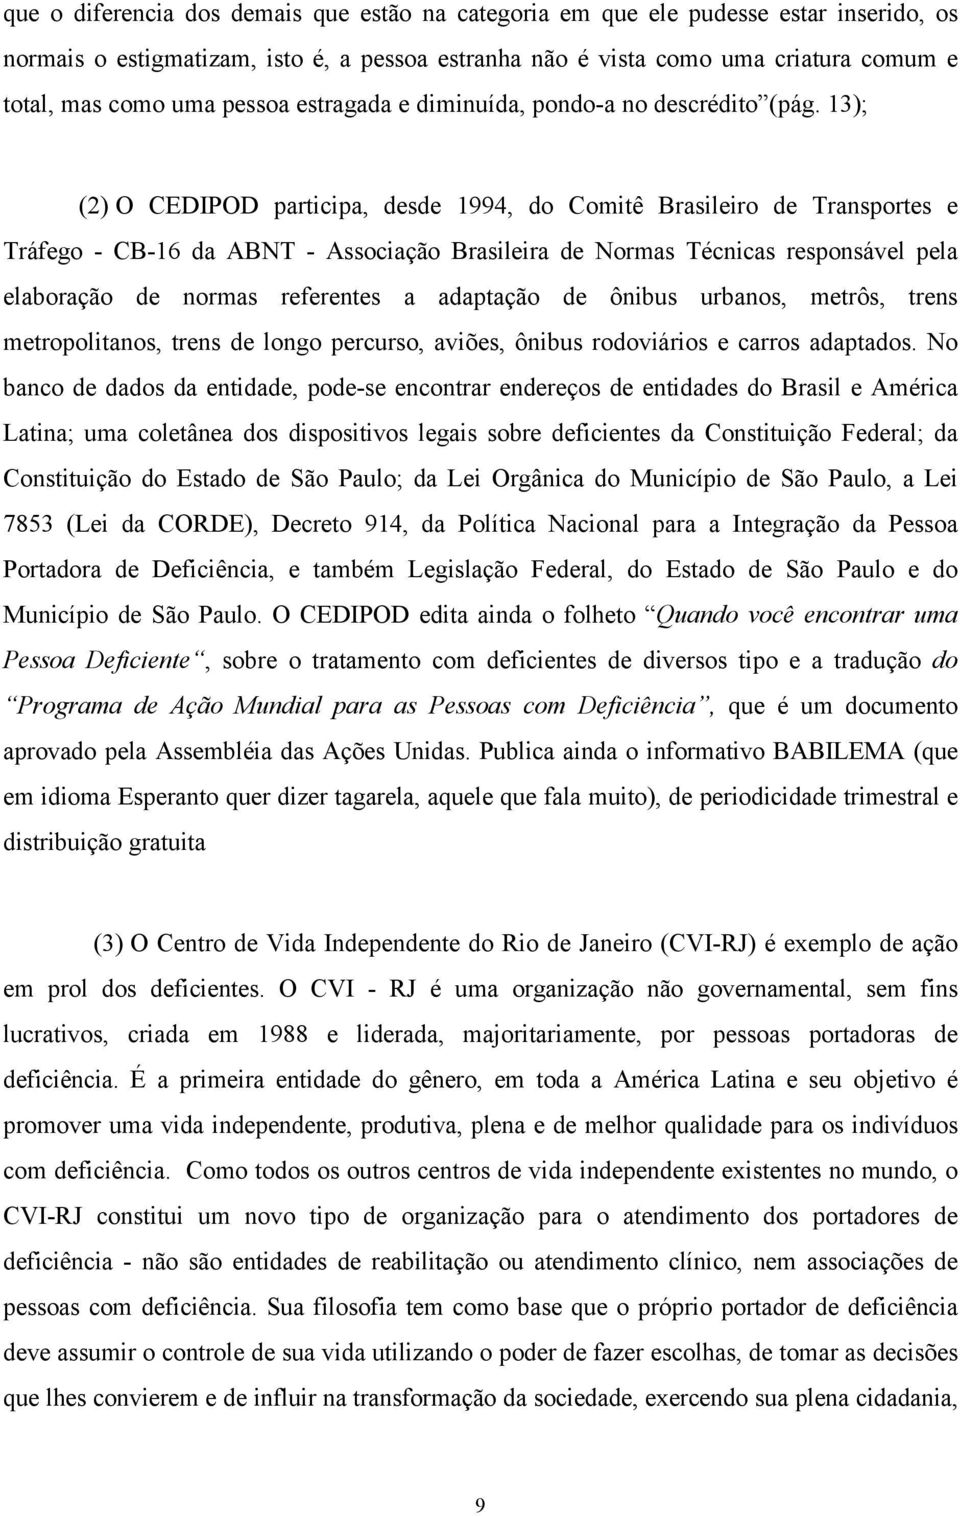 13); (2) O CEDIPOD participa, desde 1994, do Comitê Brasileiro de Transportes e Tráfego - CB-16 da ABNT - Associação Brasileira de Normas Técnicas responsável pela elaboração de normas referentes a